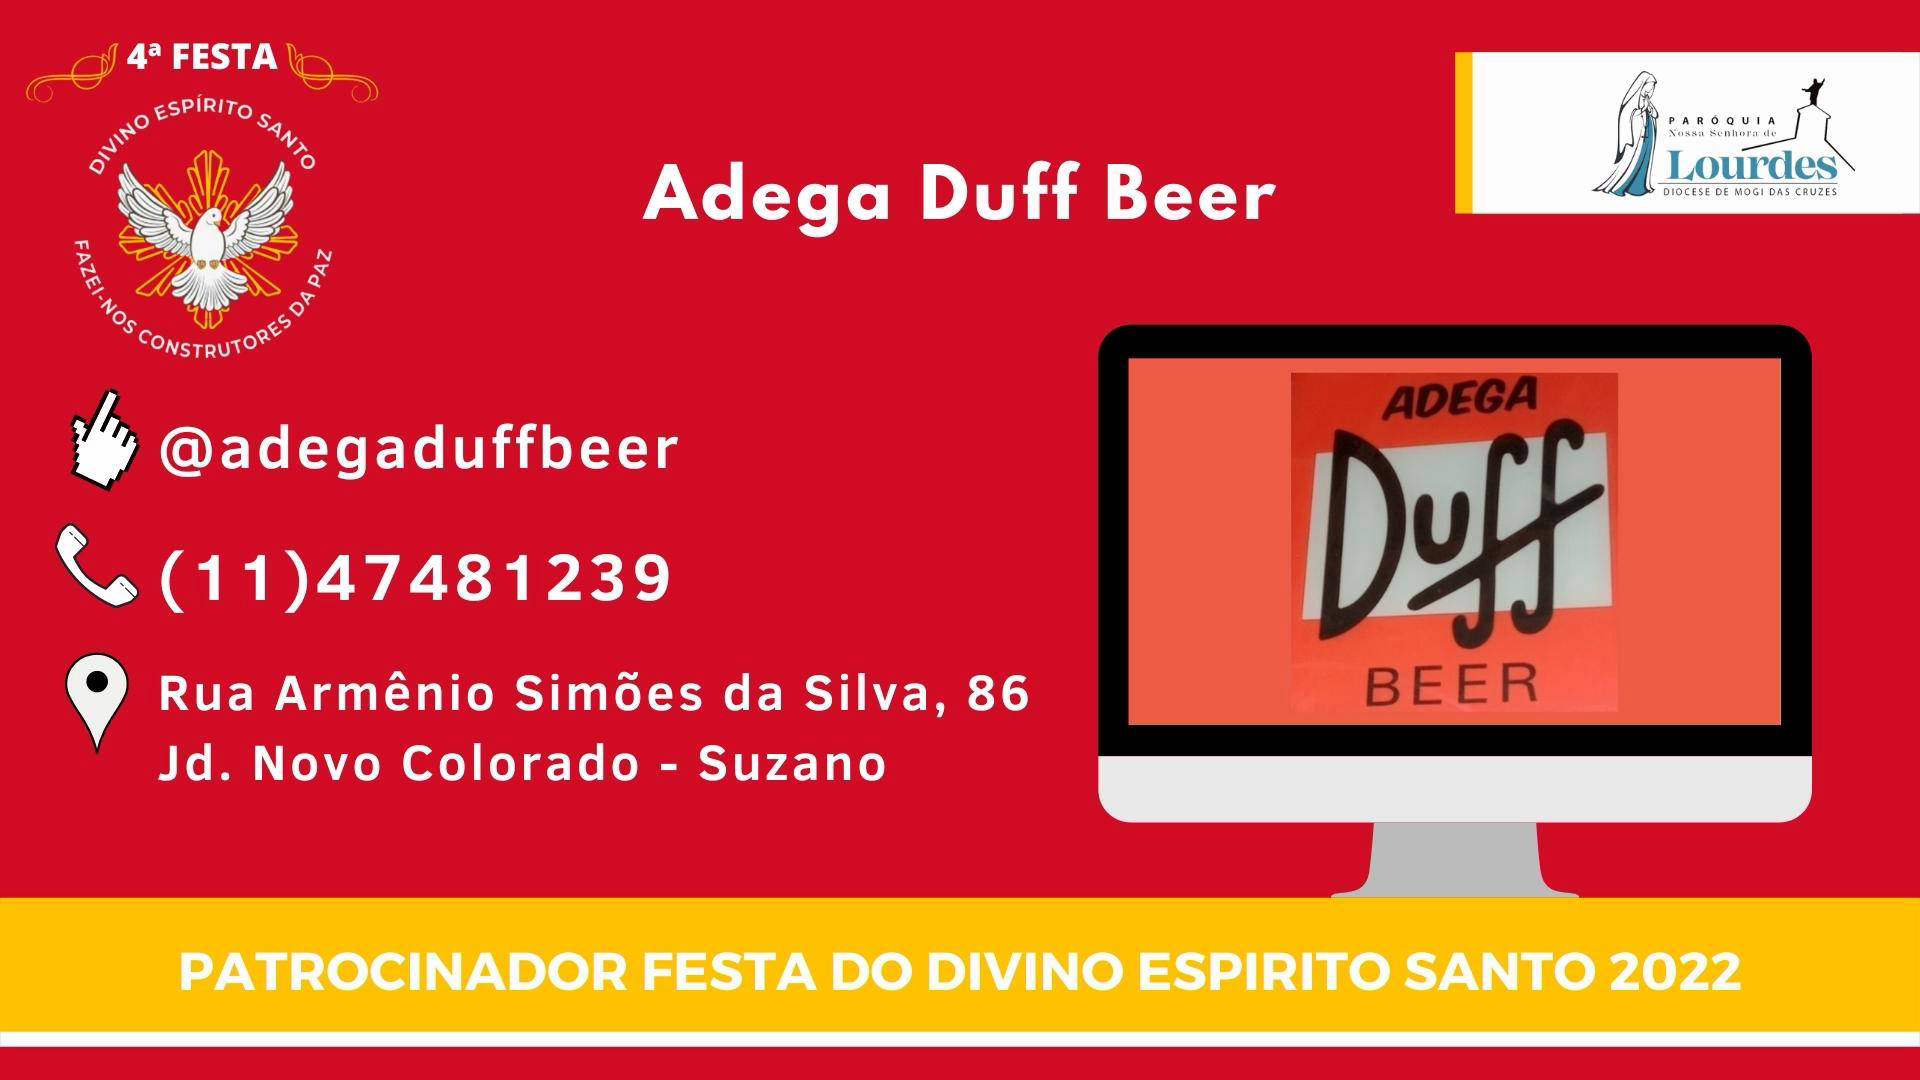 Adega Duff Beer